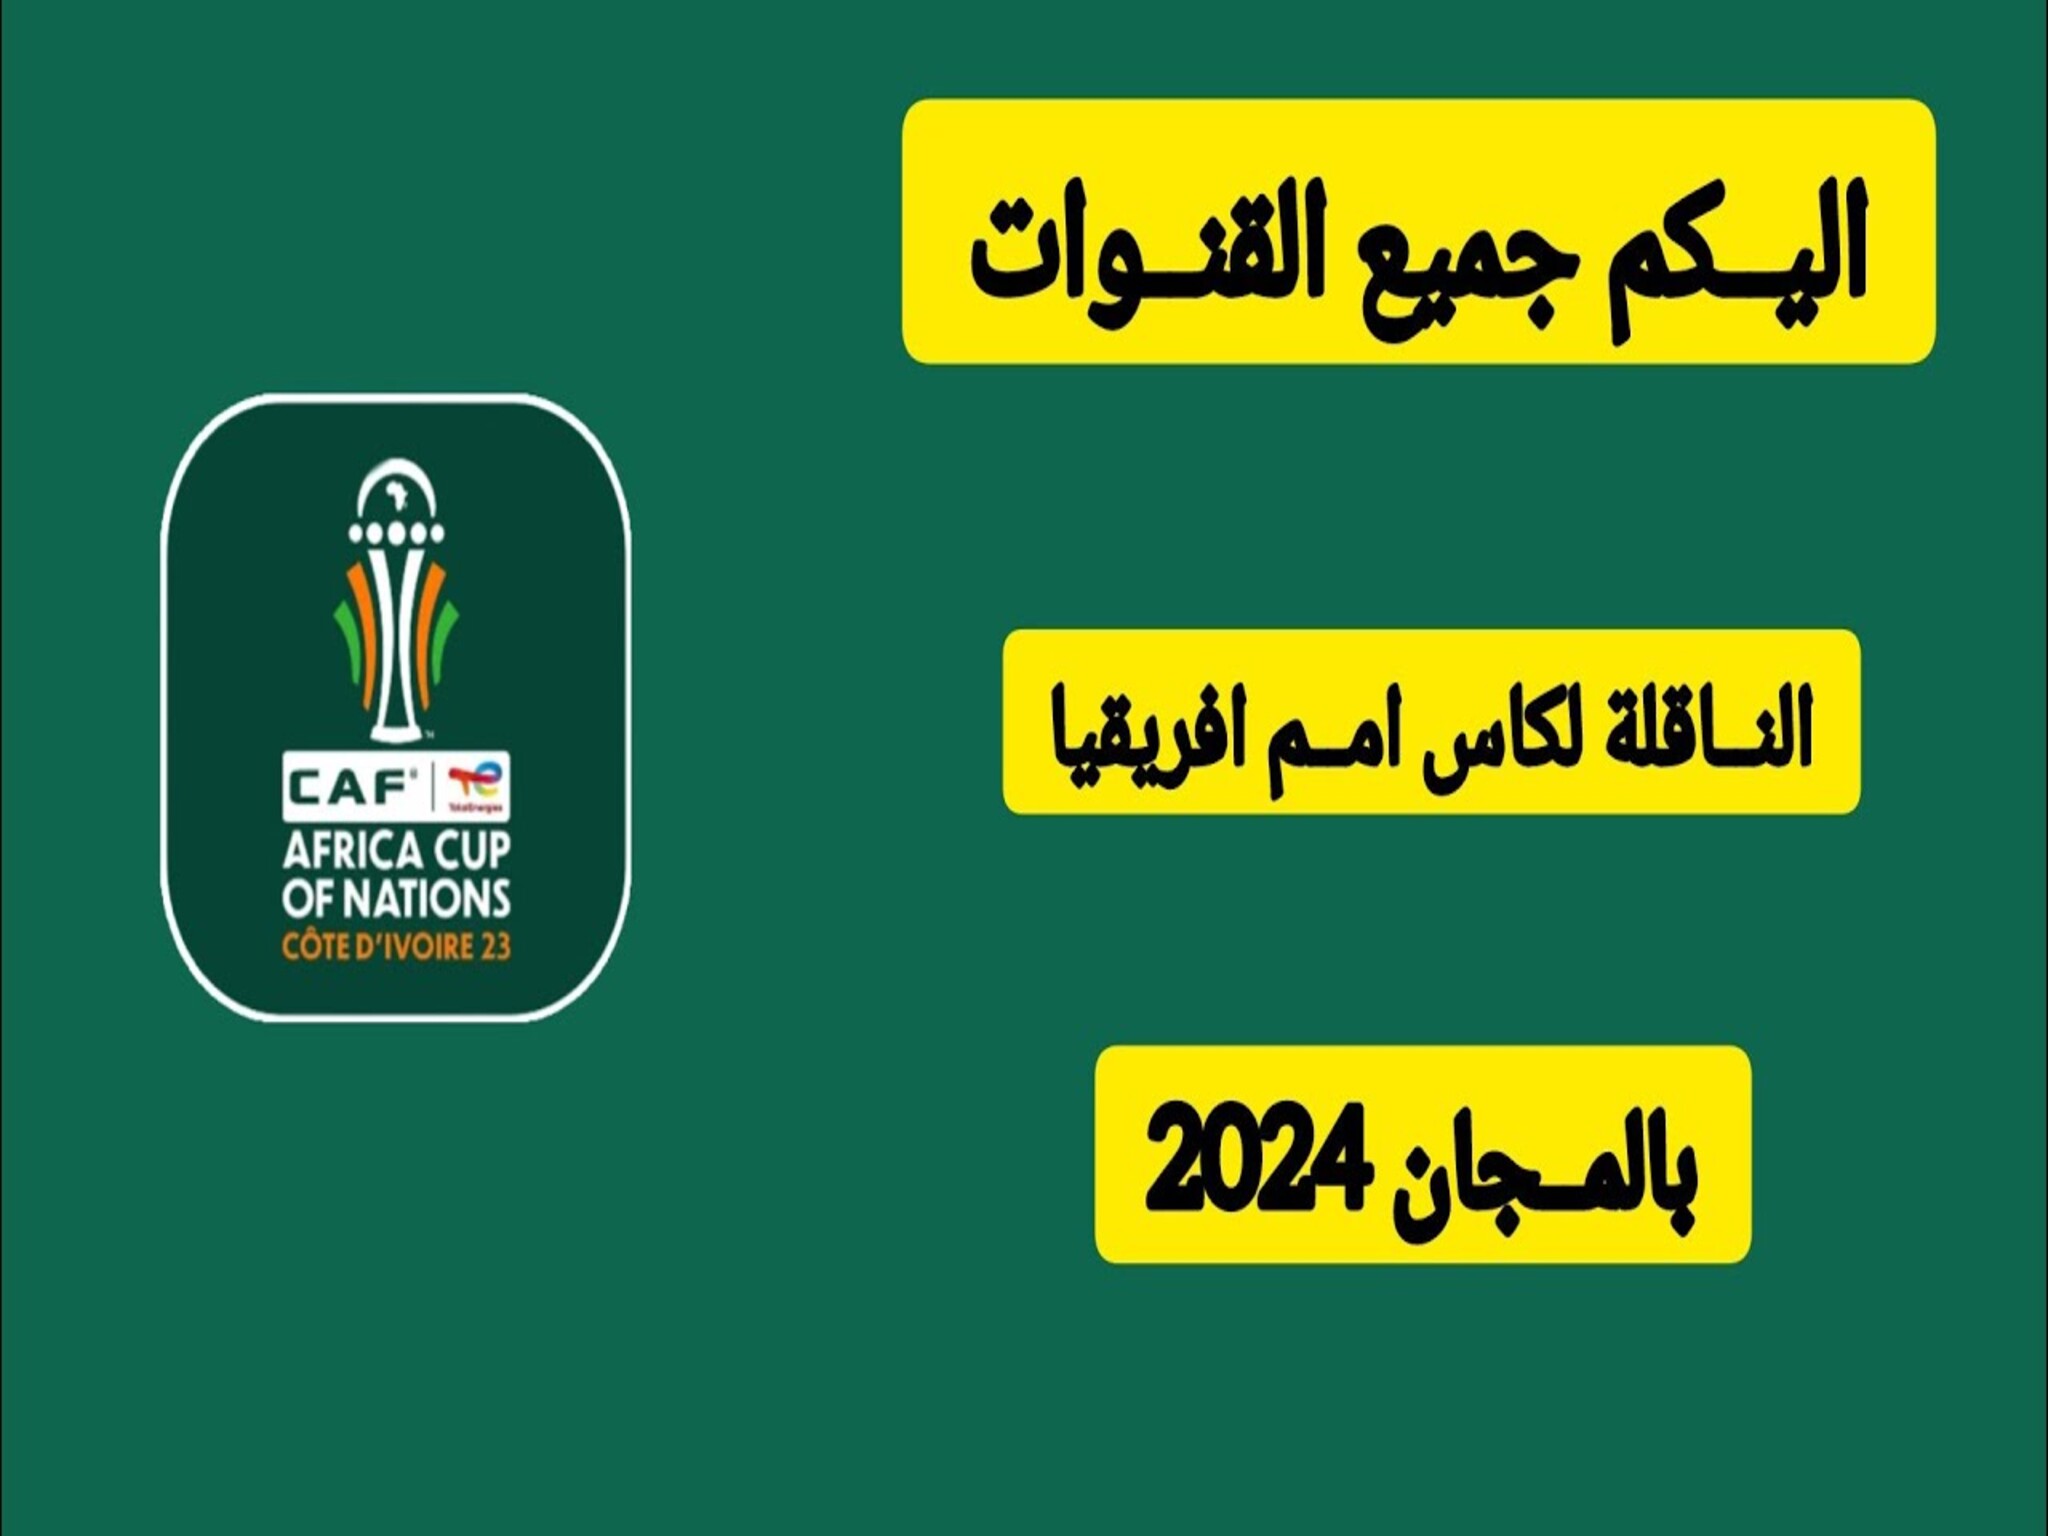 تردد القنوات المجانية الناقلة لبطولة كأس أفريقيا بالمجاني 2024